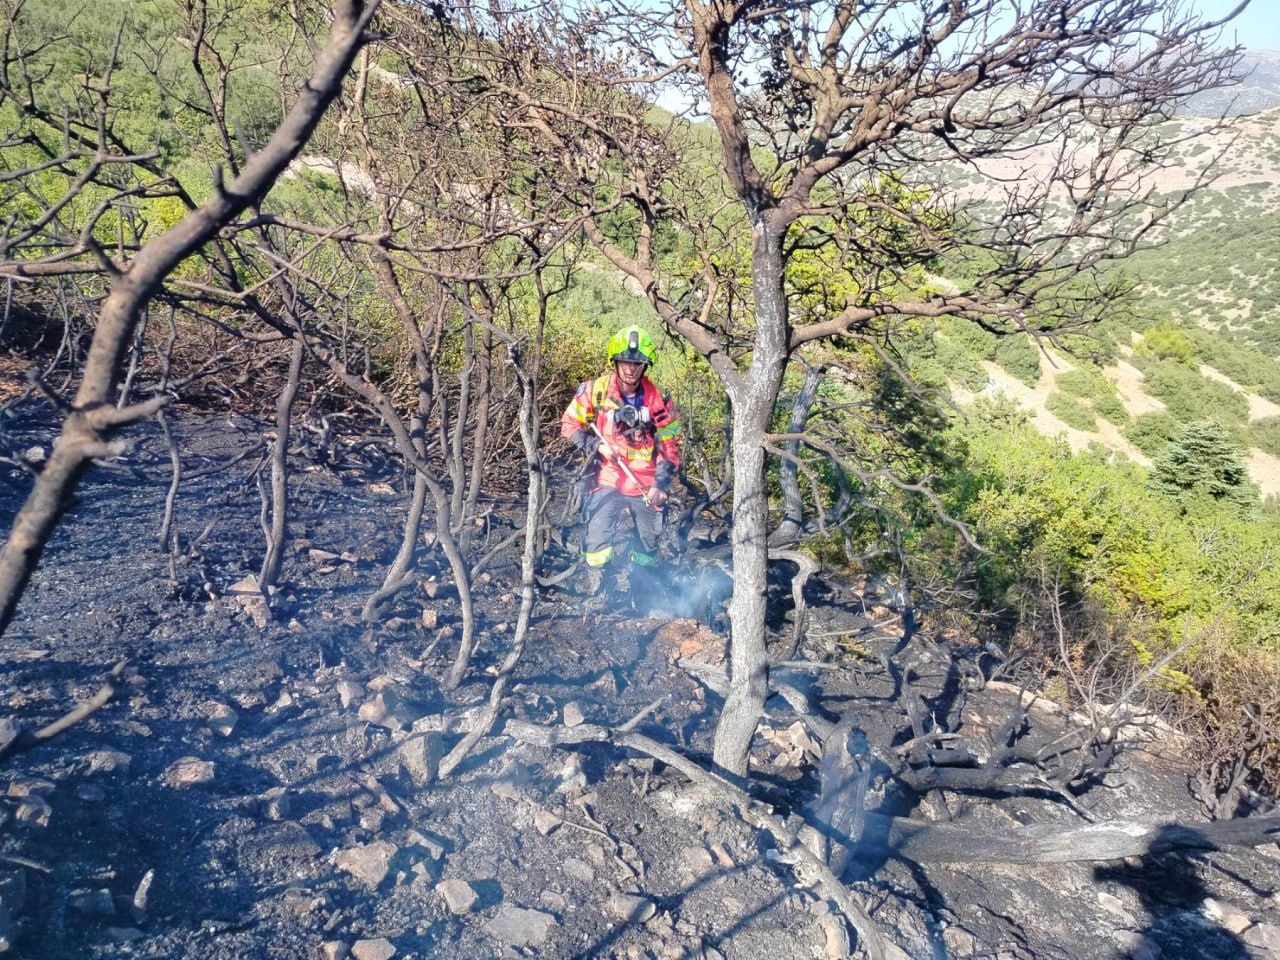 Salvatorii moldoveni, aflați în Grecia, au intervenit la stingerea unui incendiu de vegetație în localitatea Vila